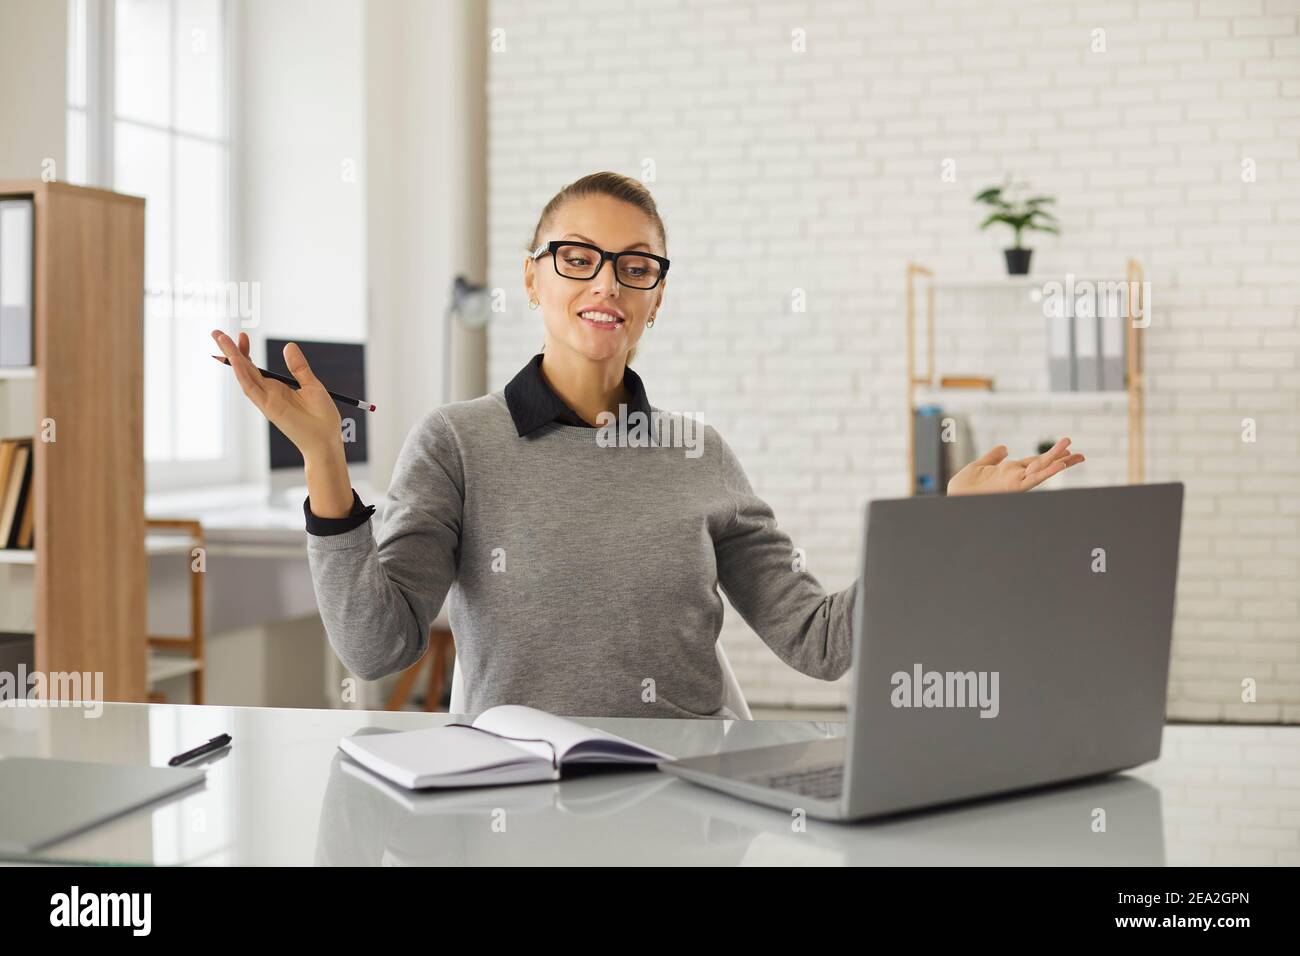 Junge positive Frau Büroangestellte gestikulierend während der Online-Kommunikation Telekonferenz Stockfoto